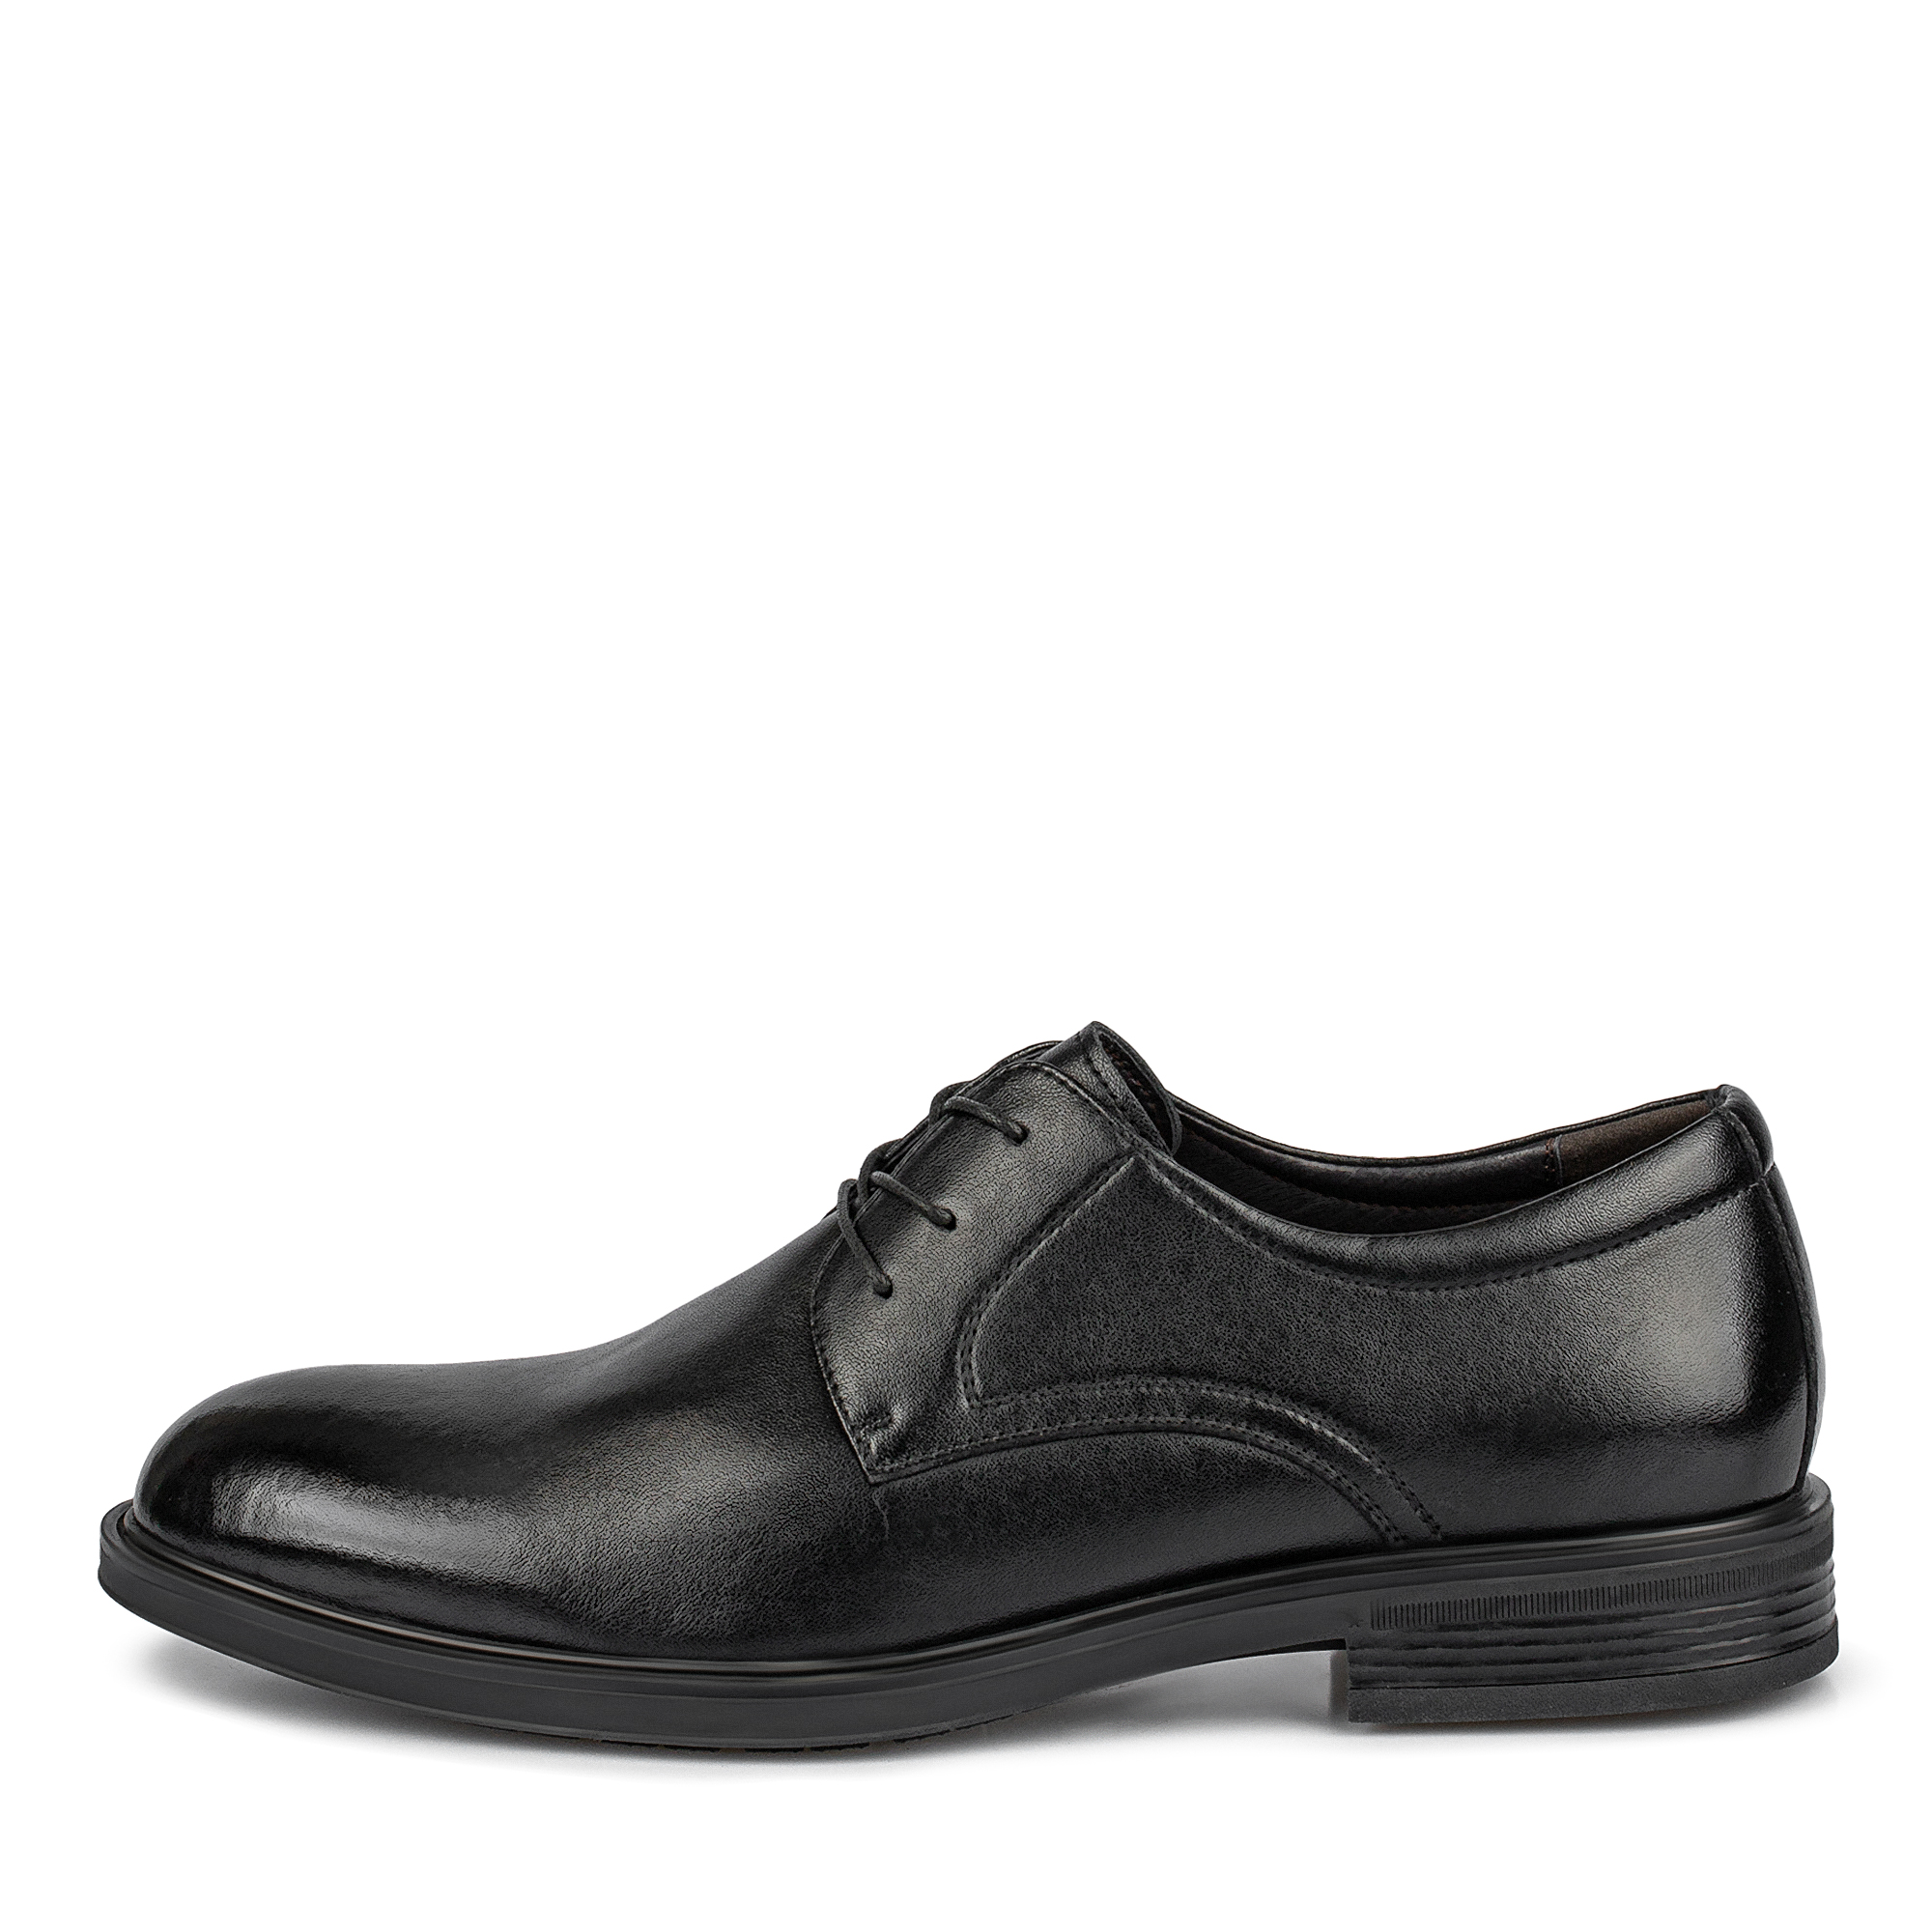 Туфли/полуботинки Thomas Munz 104-647A-1602, цвет черный, размер 42